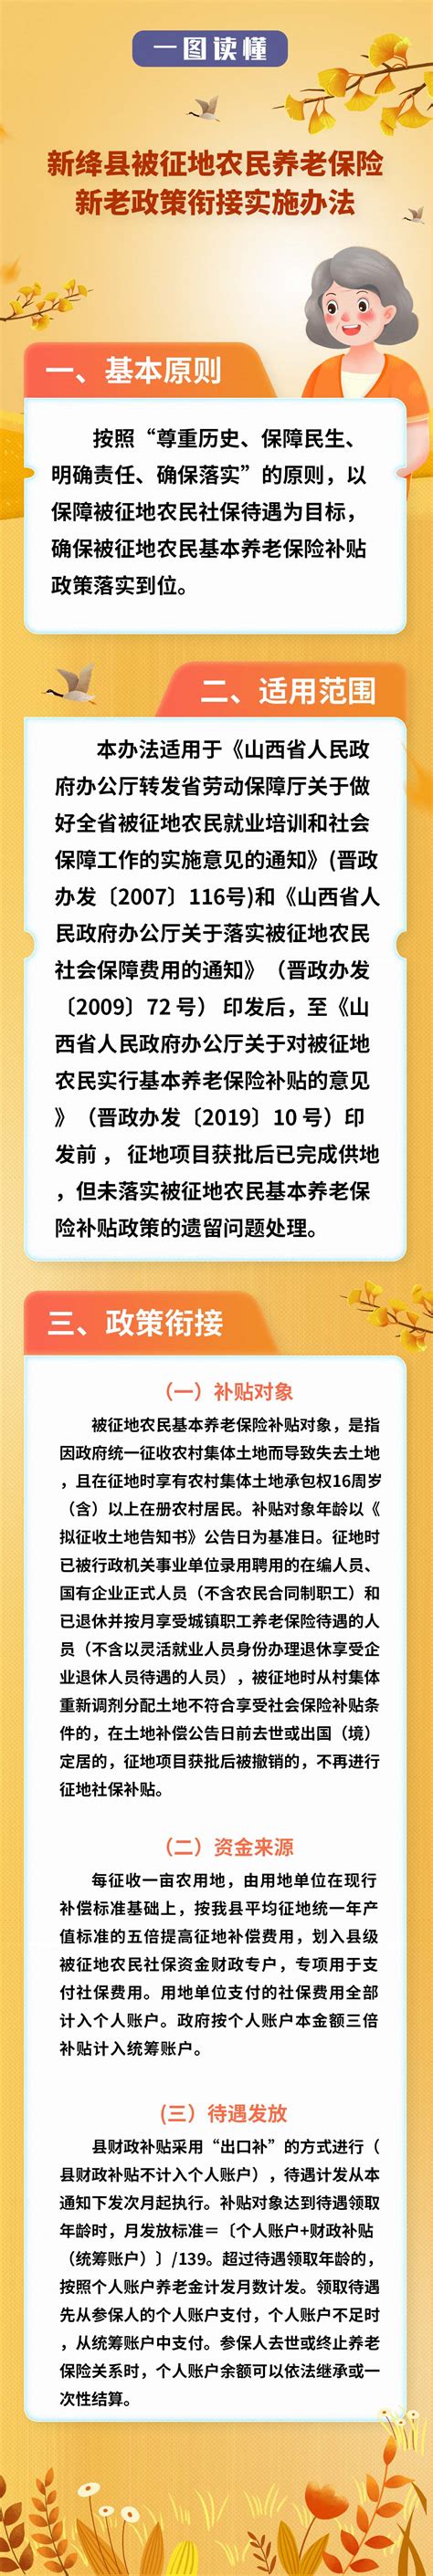 优化营商环境政策专栏-新绛县人民政府门户网站